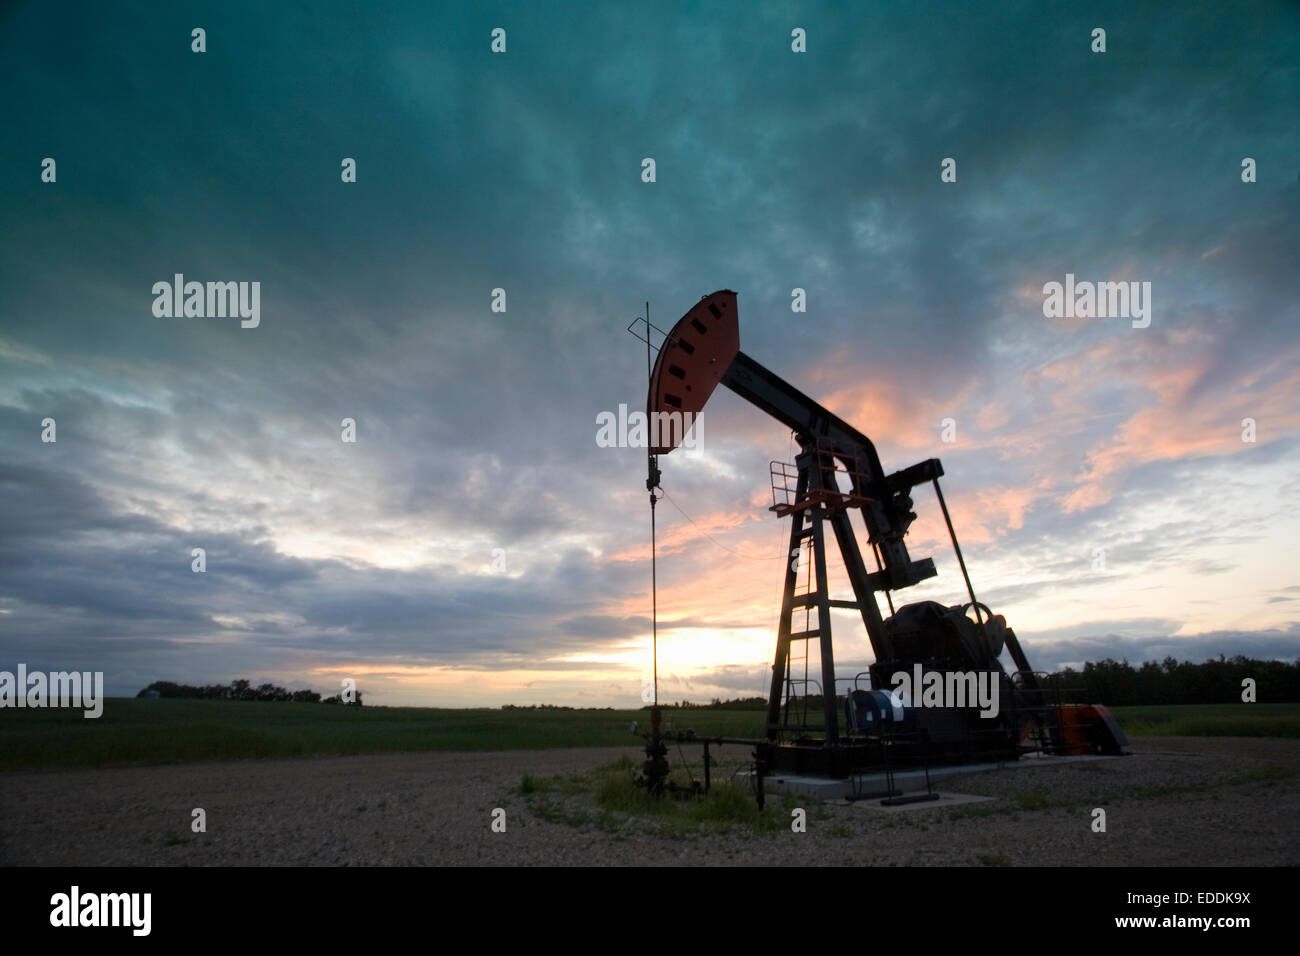 Ein Öl-Derrick, ein gut Kopf Pumpe Arm mit Rahmen, Silhouette gegen den Abendhimmel. Öl-Geschäft. Stockfoto